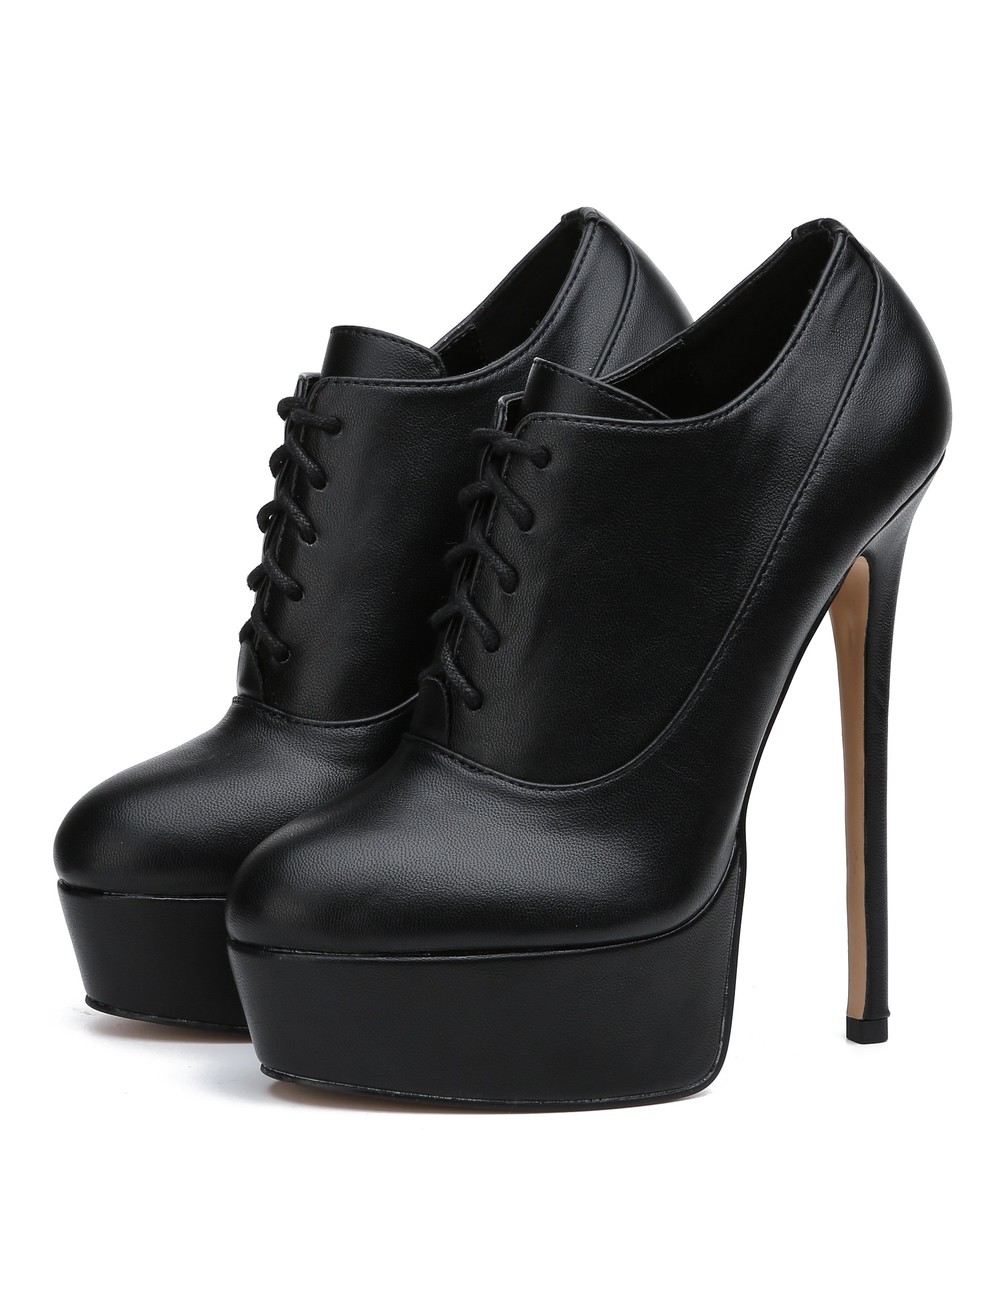 Giaro SASSY BLACK MATTE OXFORD PUMPS - Shoebidoo Shoes | Giaro high heels